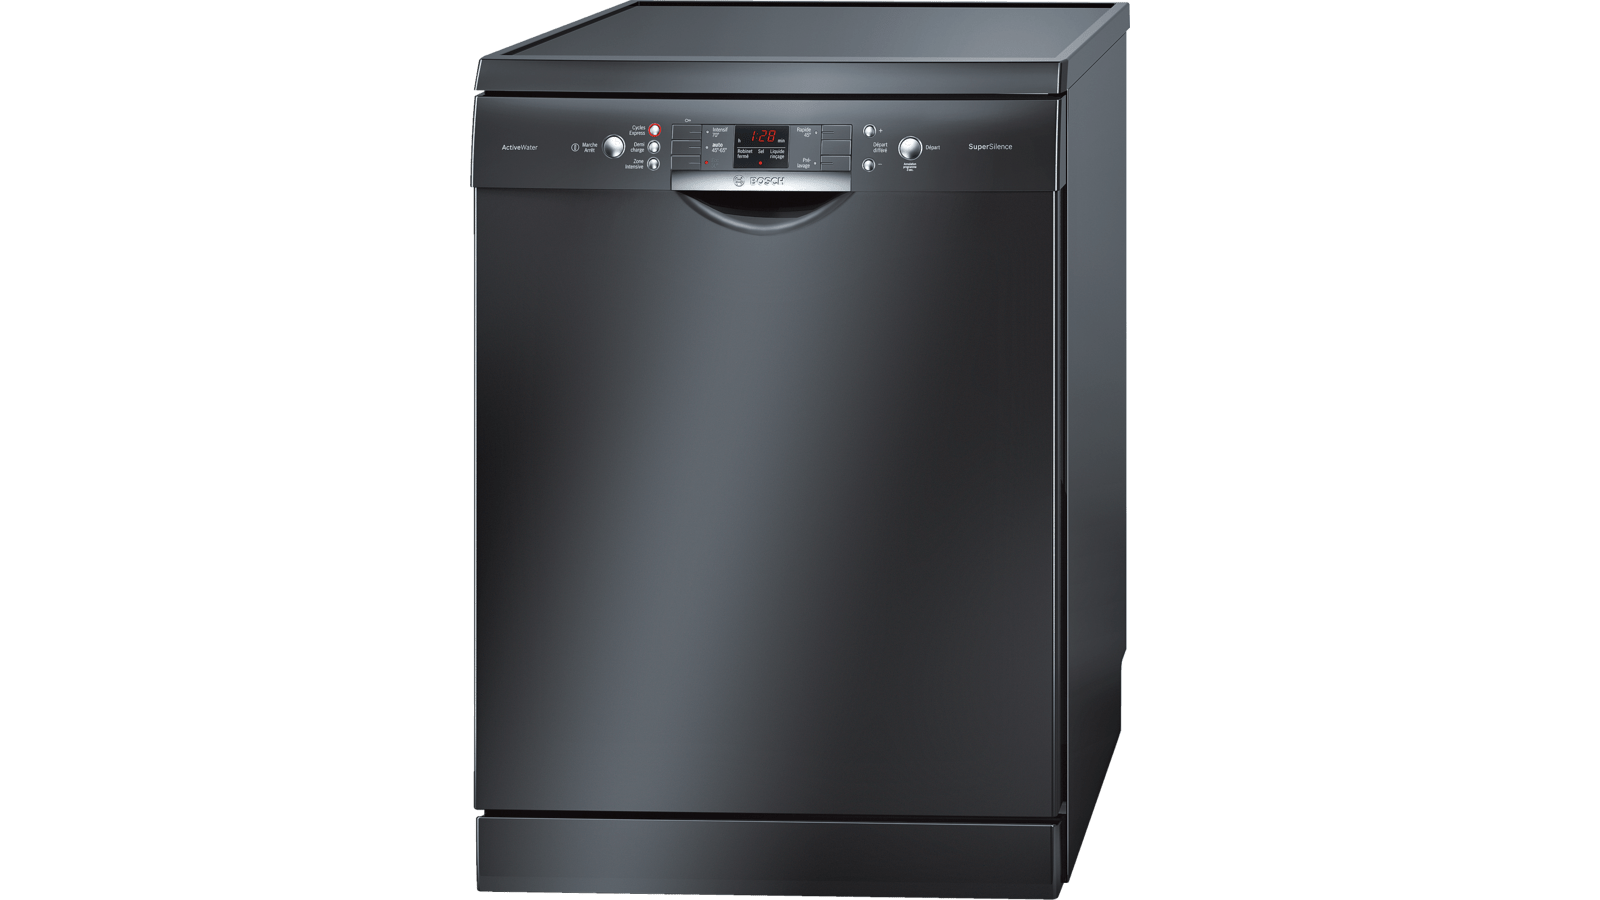 Посудомоечная машина Bosch Silence Plus. Bosch посудомоечная машина черная отдельностоящая 60 см. Посудомоечная машина Bosch SMS 63m42. Посудомоечная машина бош 45 см отдельностоящая. Посудомоечная машина рейтинг цена качество 60